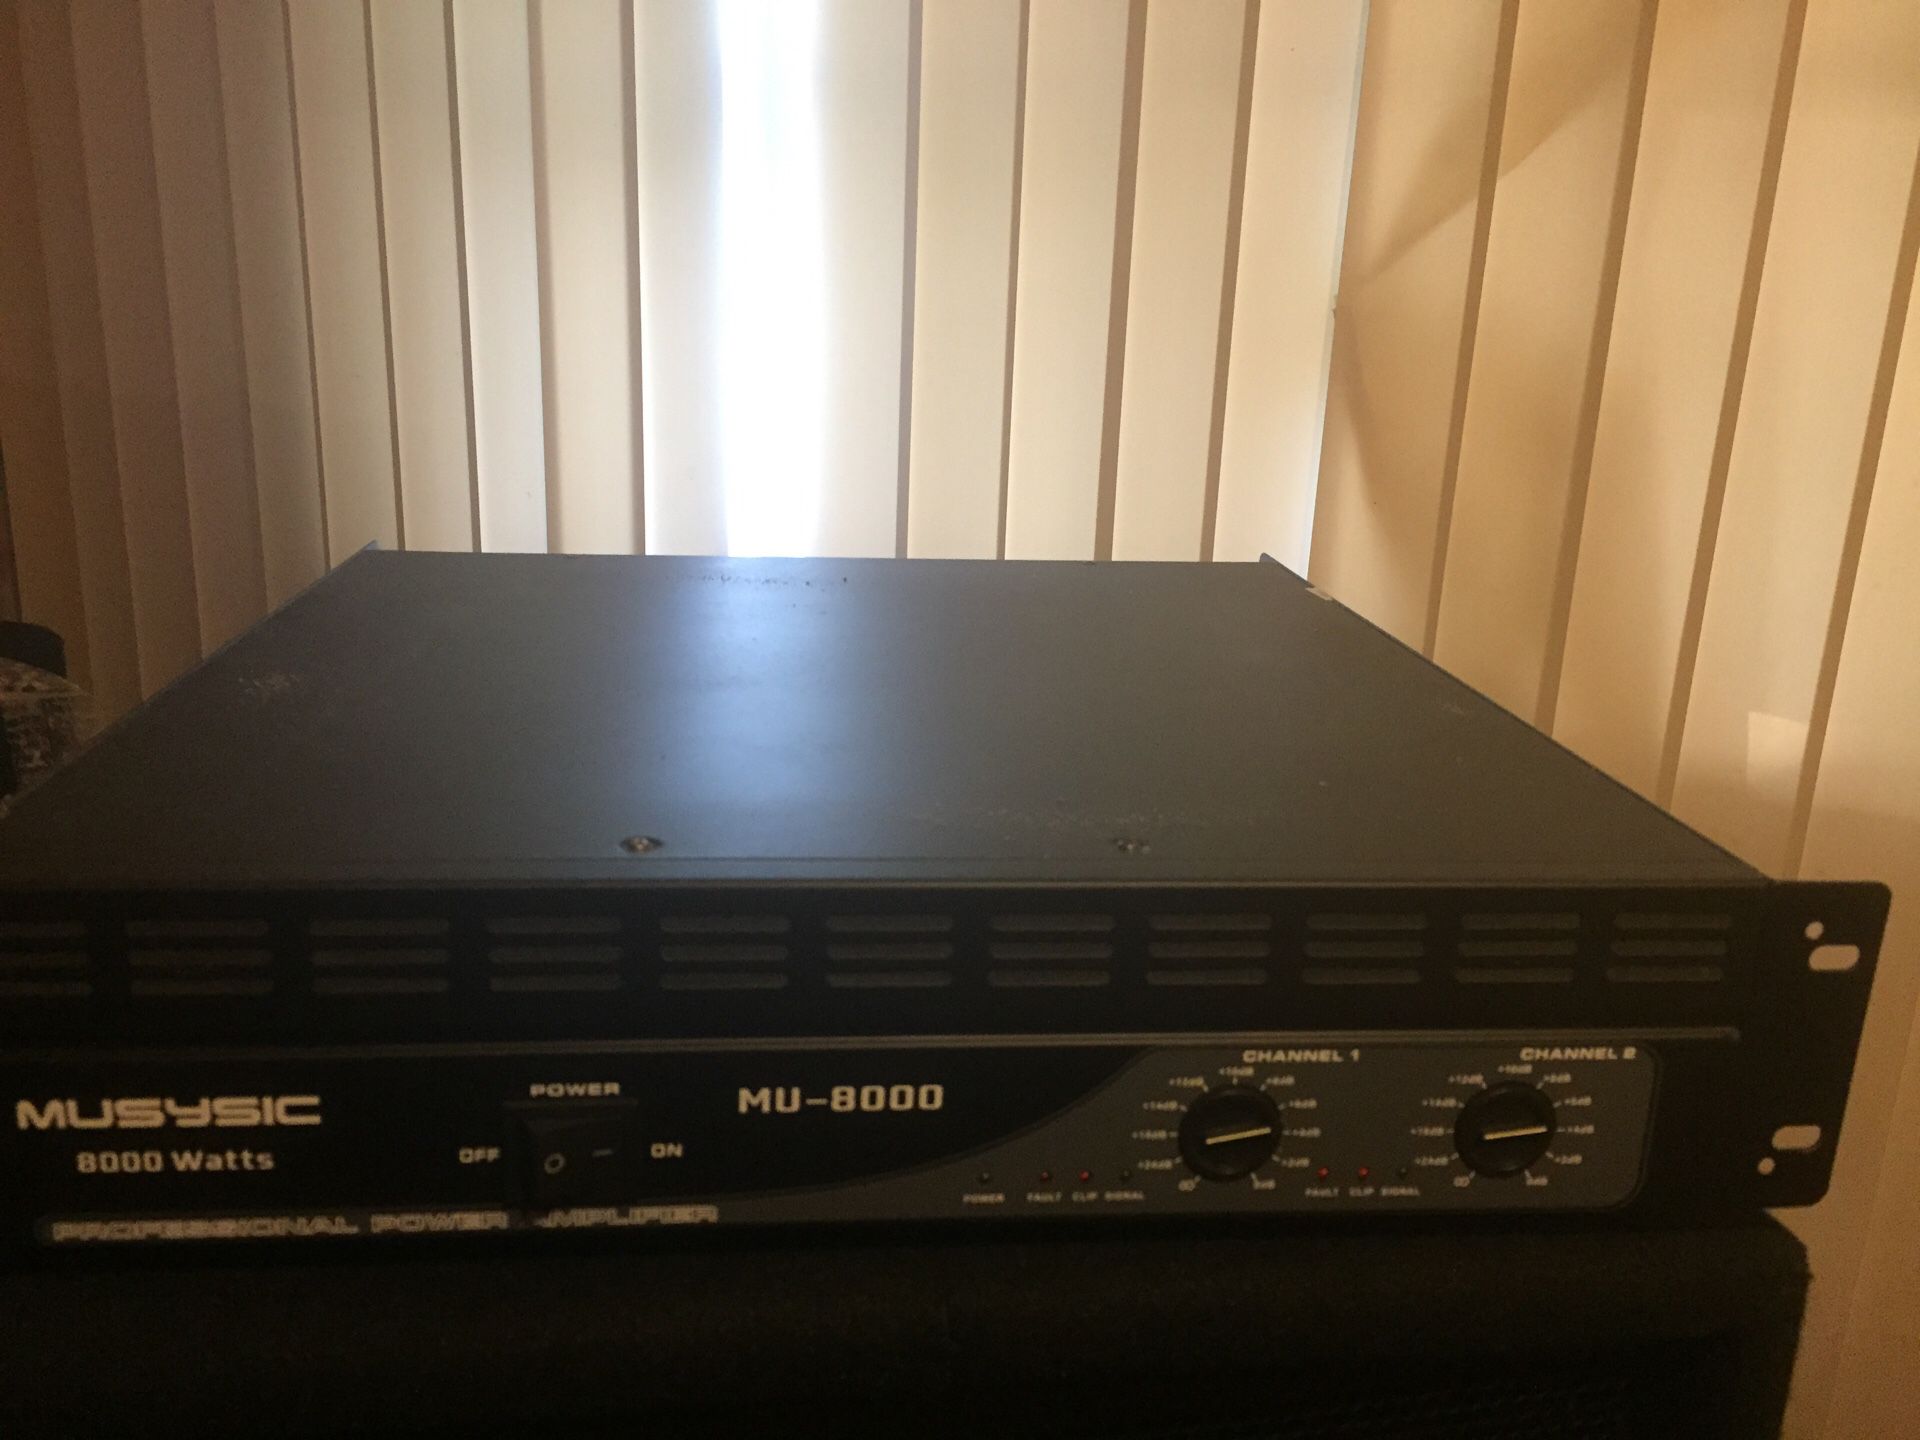 Musysic MU-8000 professional amplifier